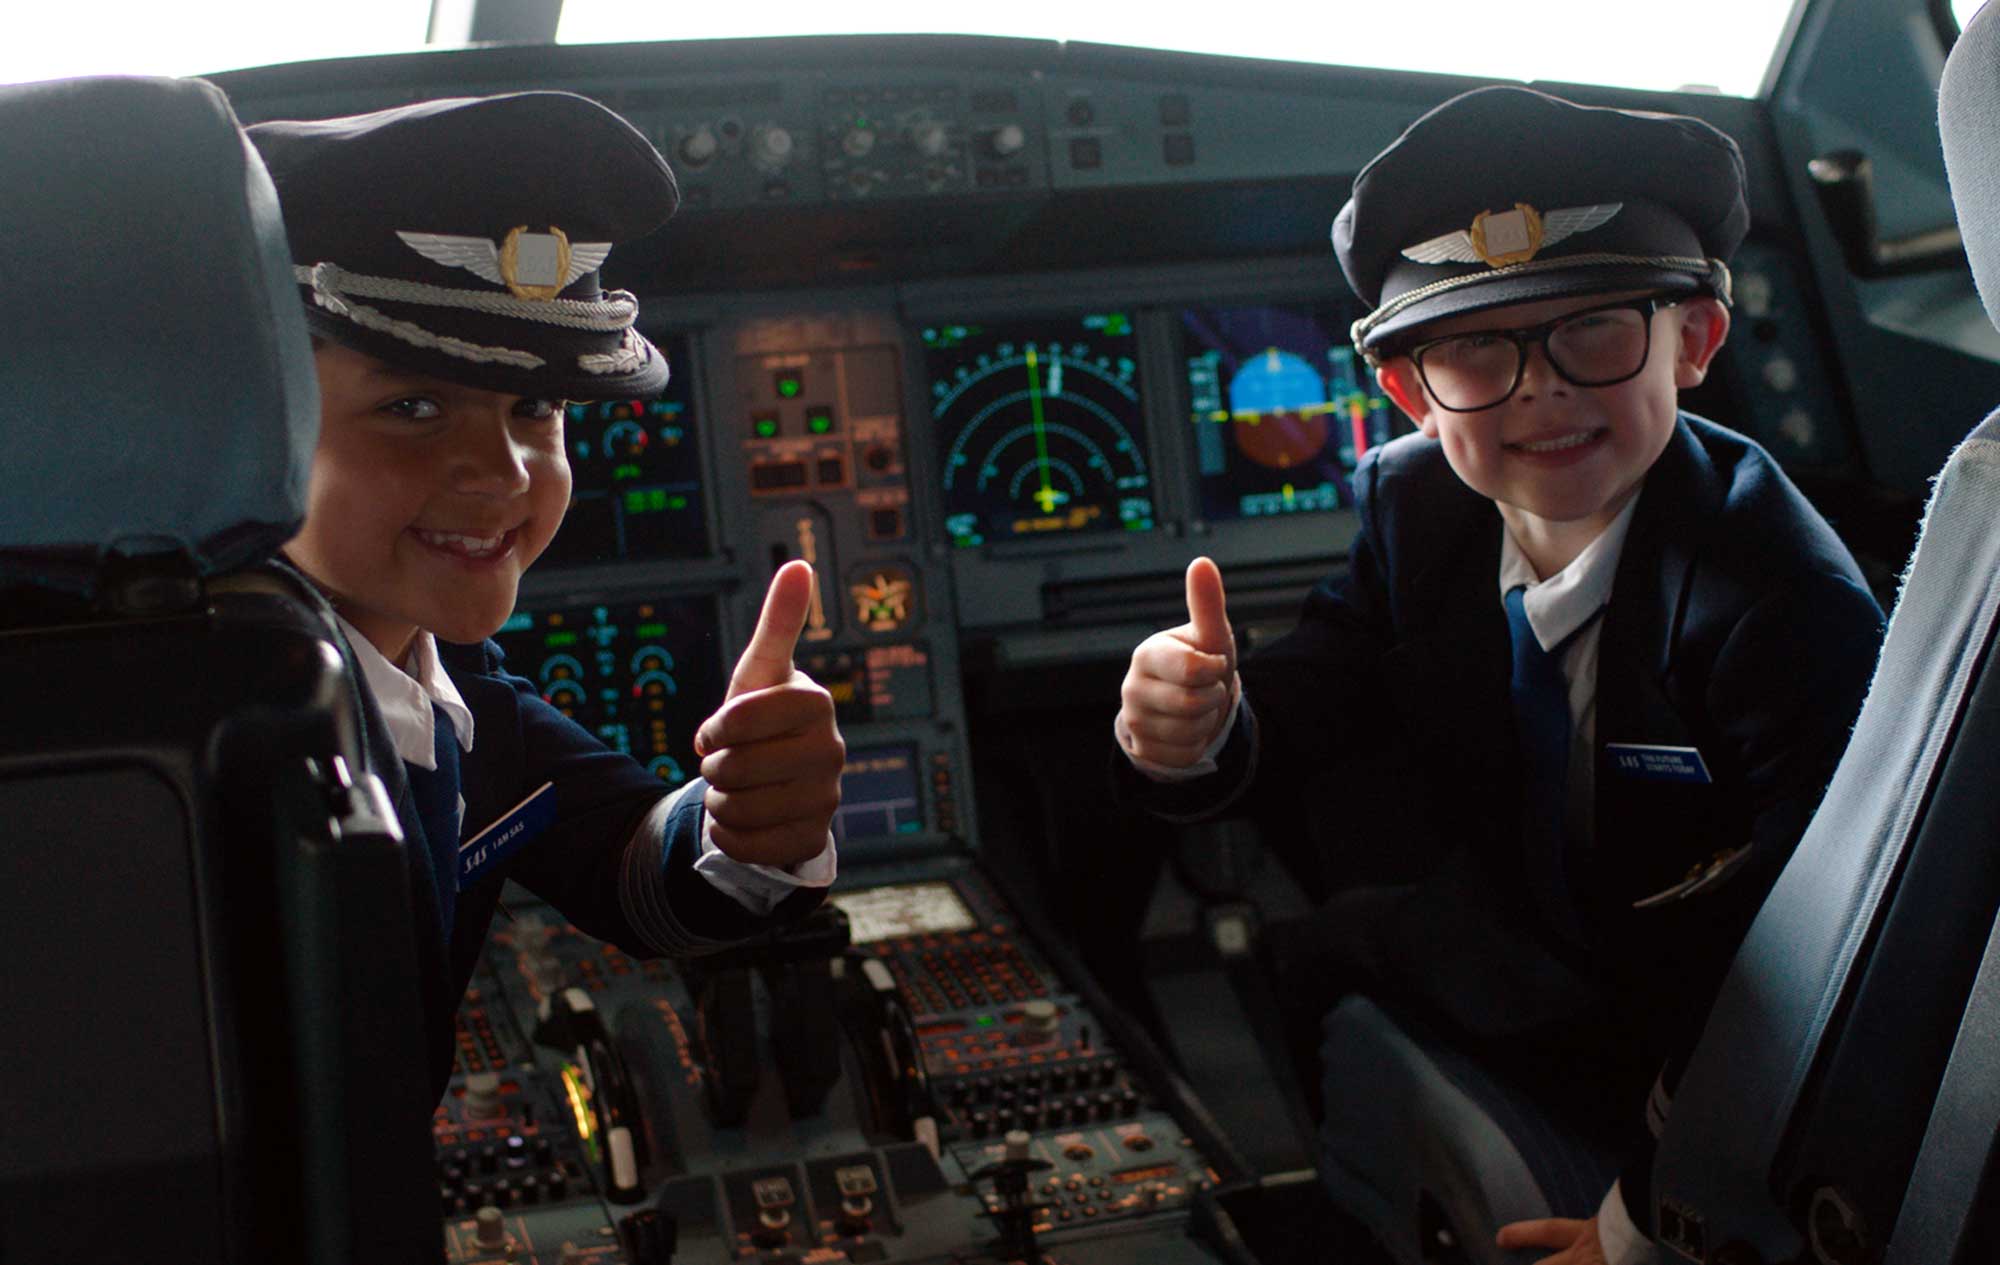 SAS young pilots